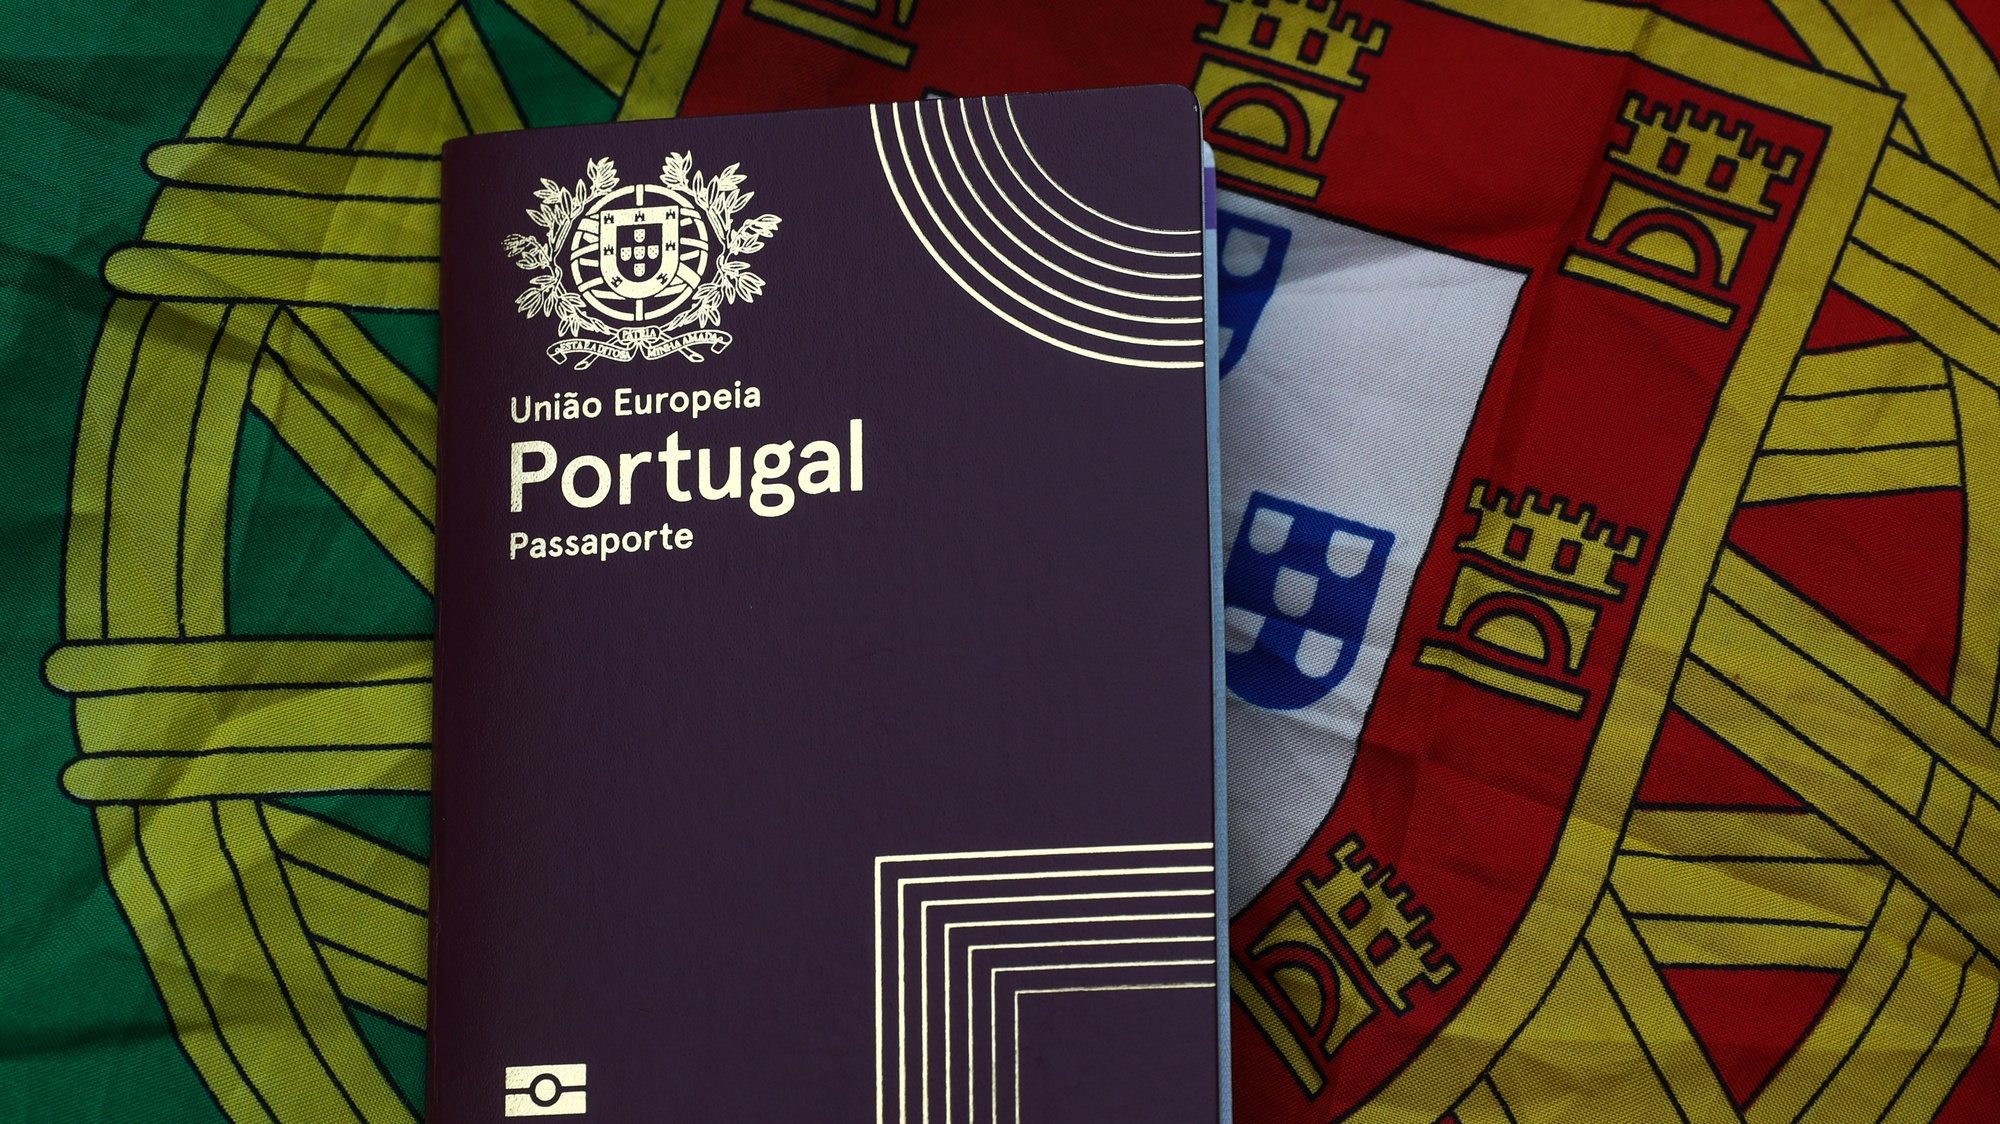 Passaporte emitido pelo governo português, Lisboa, 08 de outubro de 2021. ANTÓNIO COTRIM/LUSA